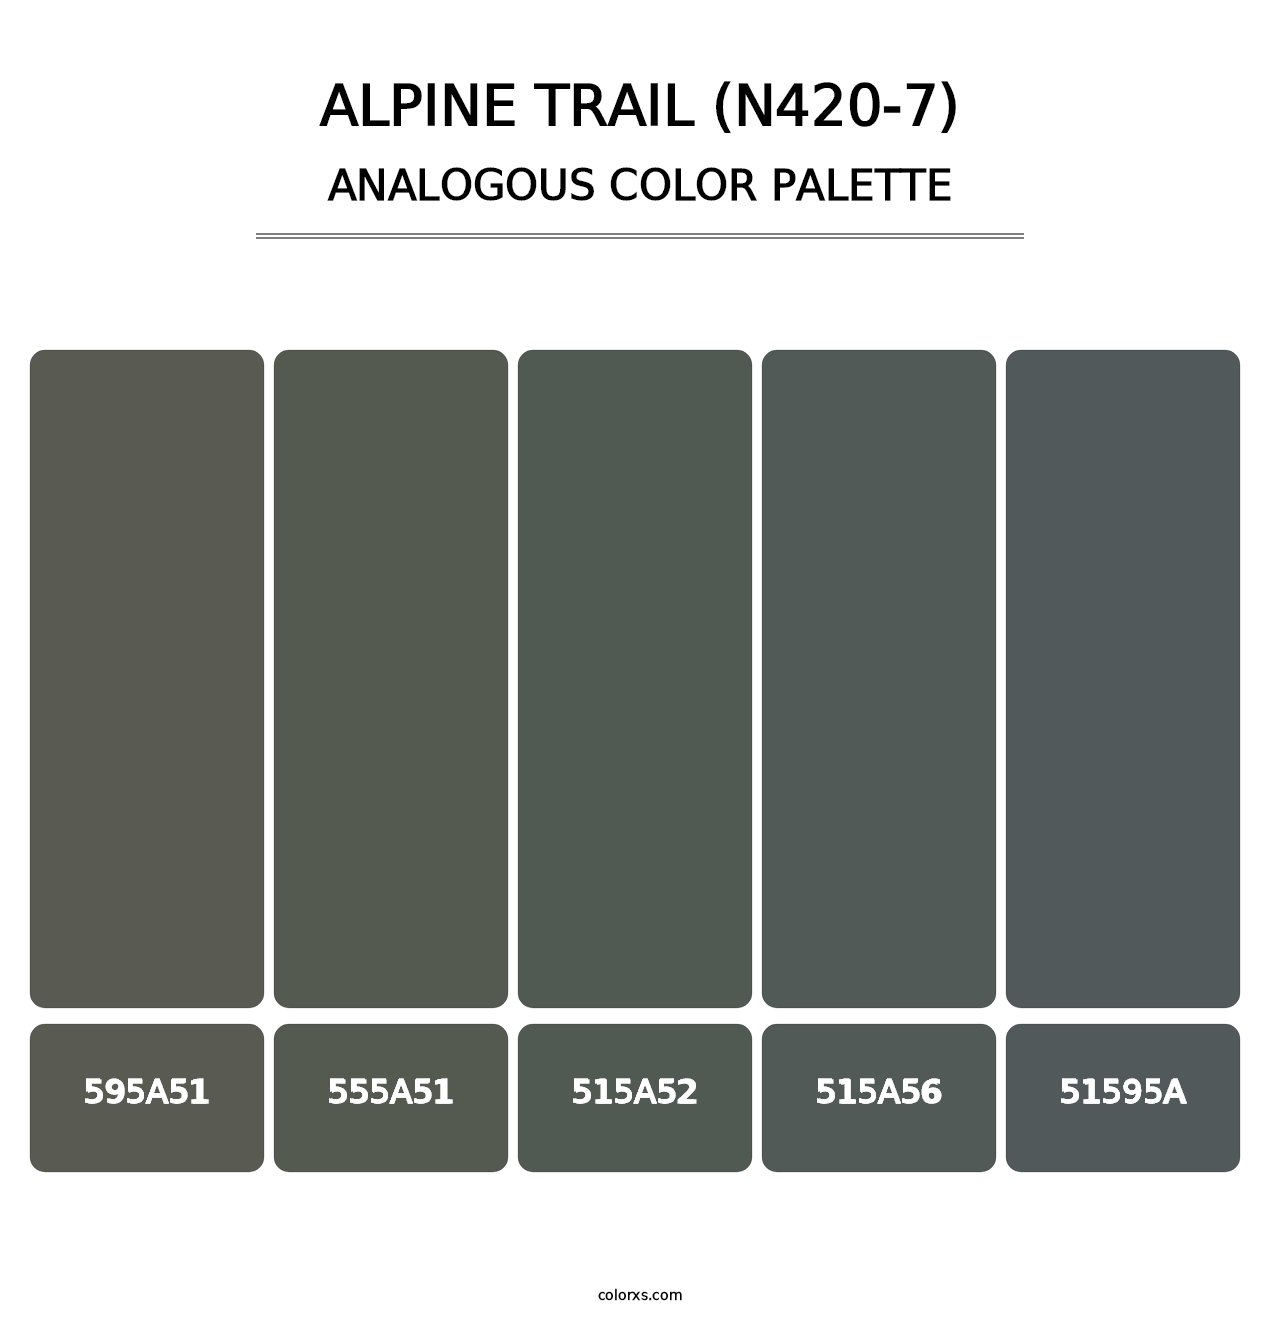 Alpine Trail (N420-7) - Analogous Color Palette